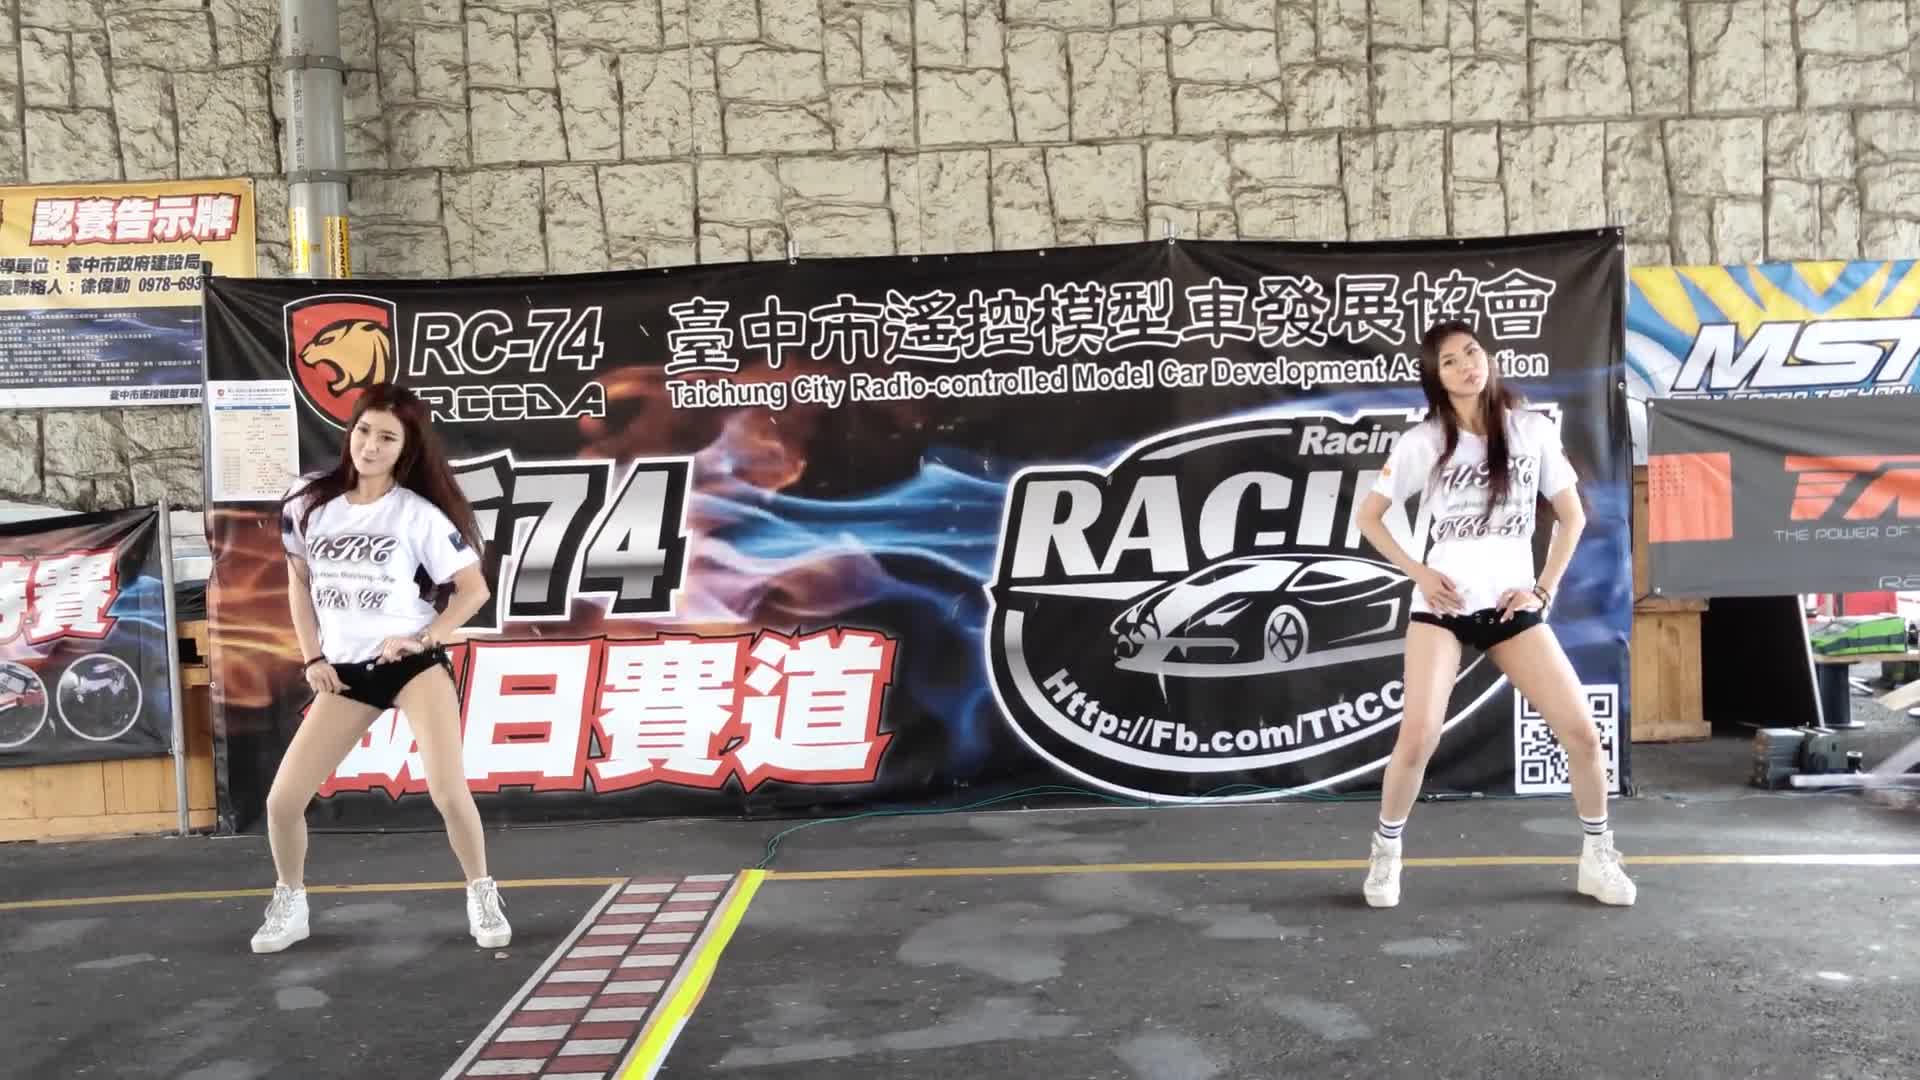 臺中市遙控模型車發展協會遙控車聚活動 跳跳糖PopCandy-阿布.格格 舞蹈表演熱舞1